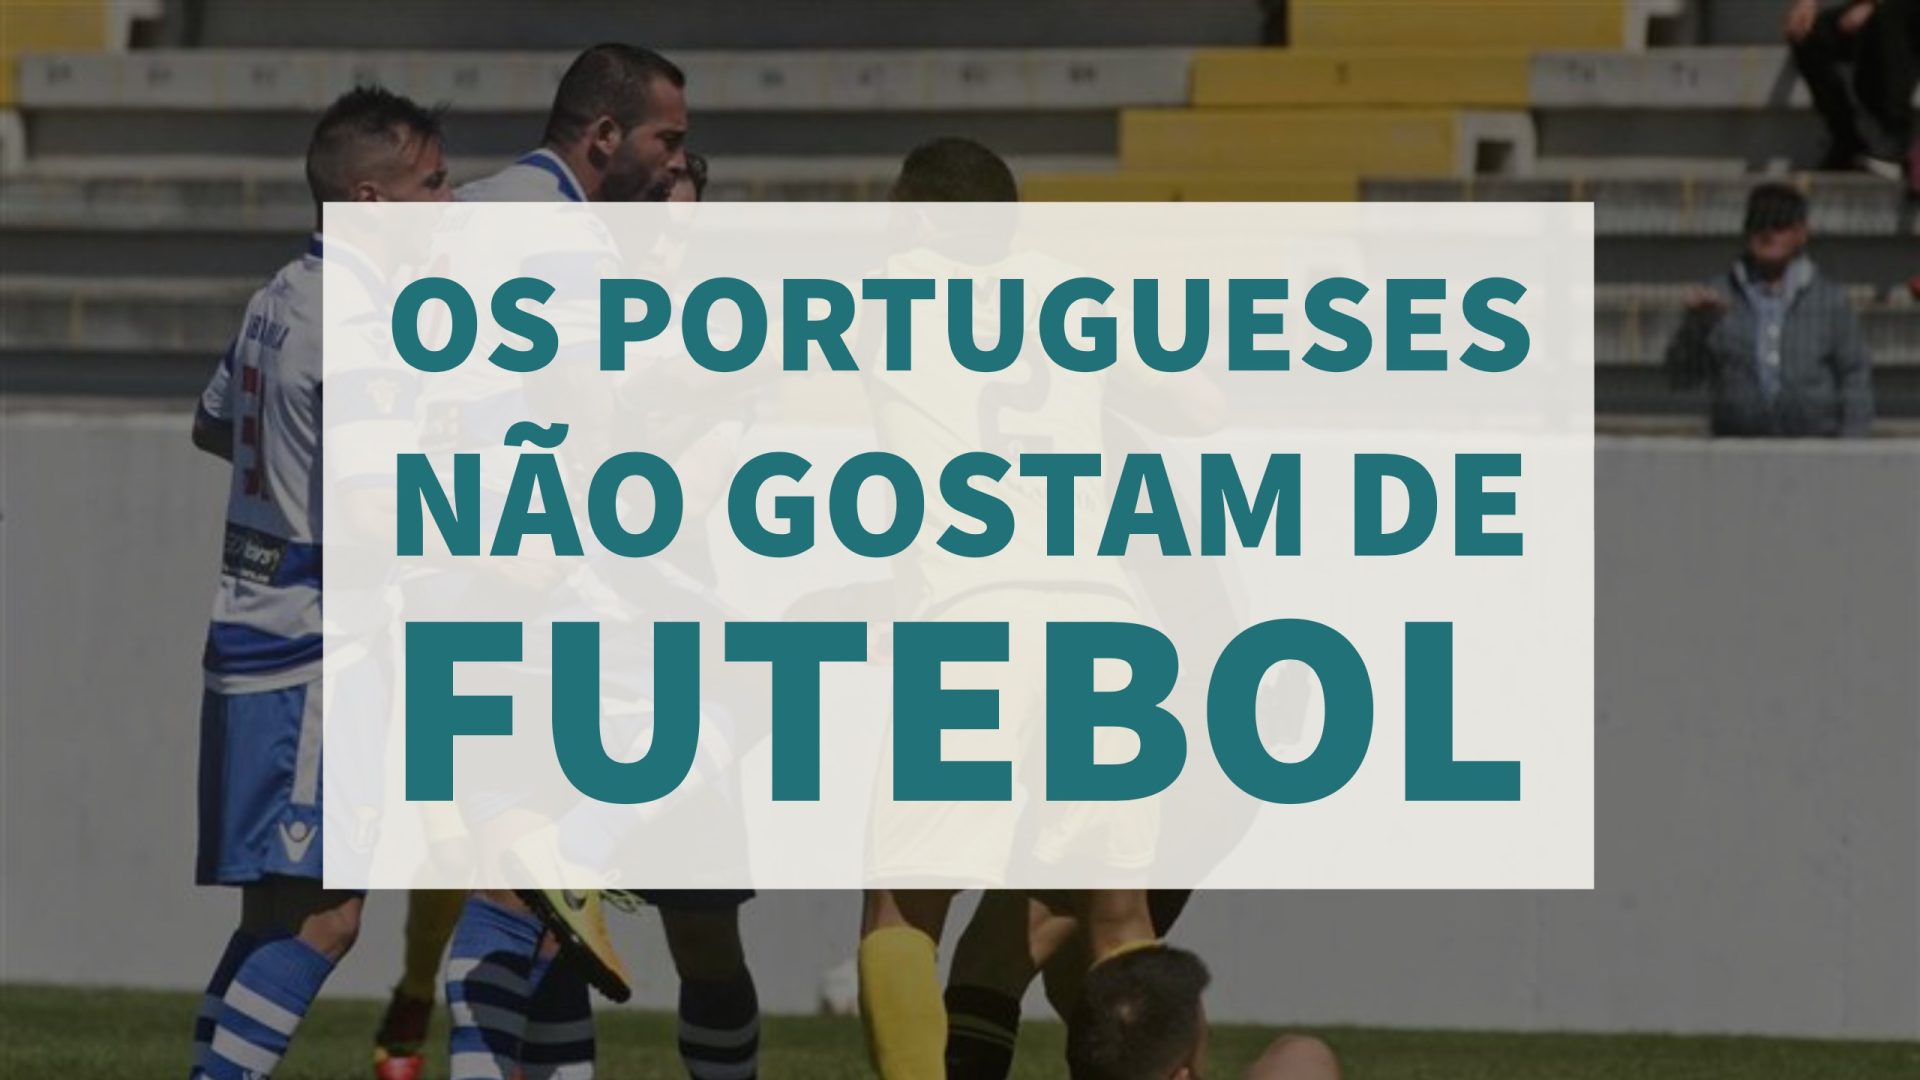 Isto é Sério. Os portugueses não gostam de futebol